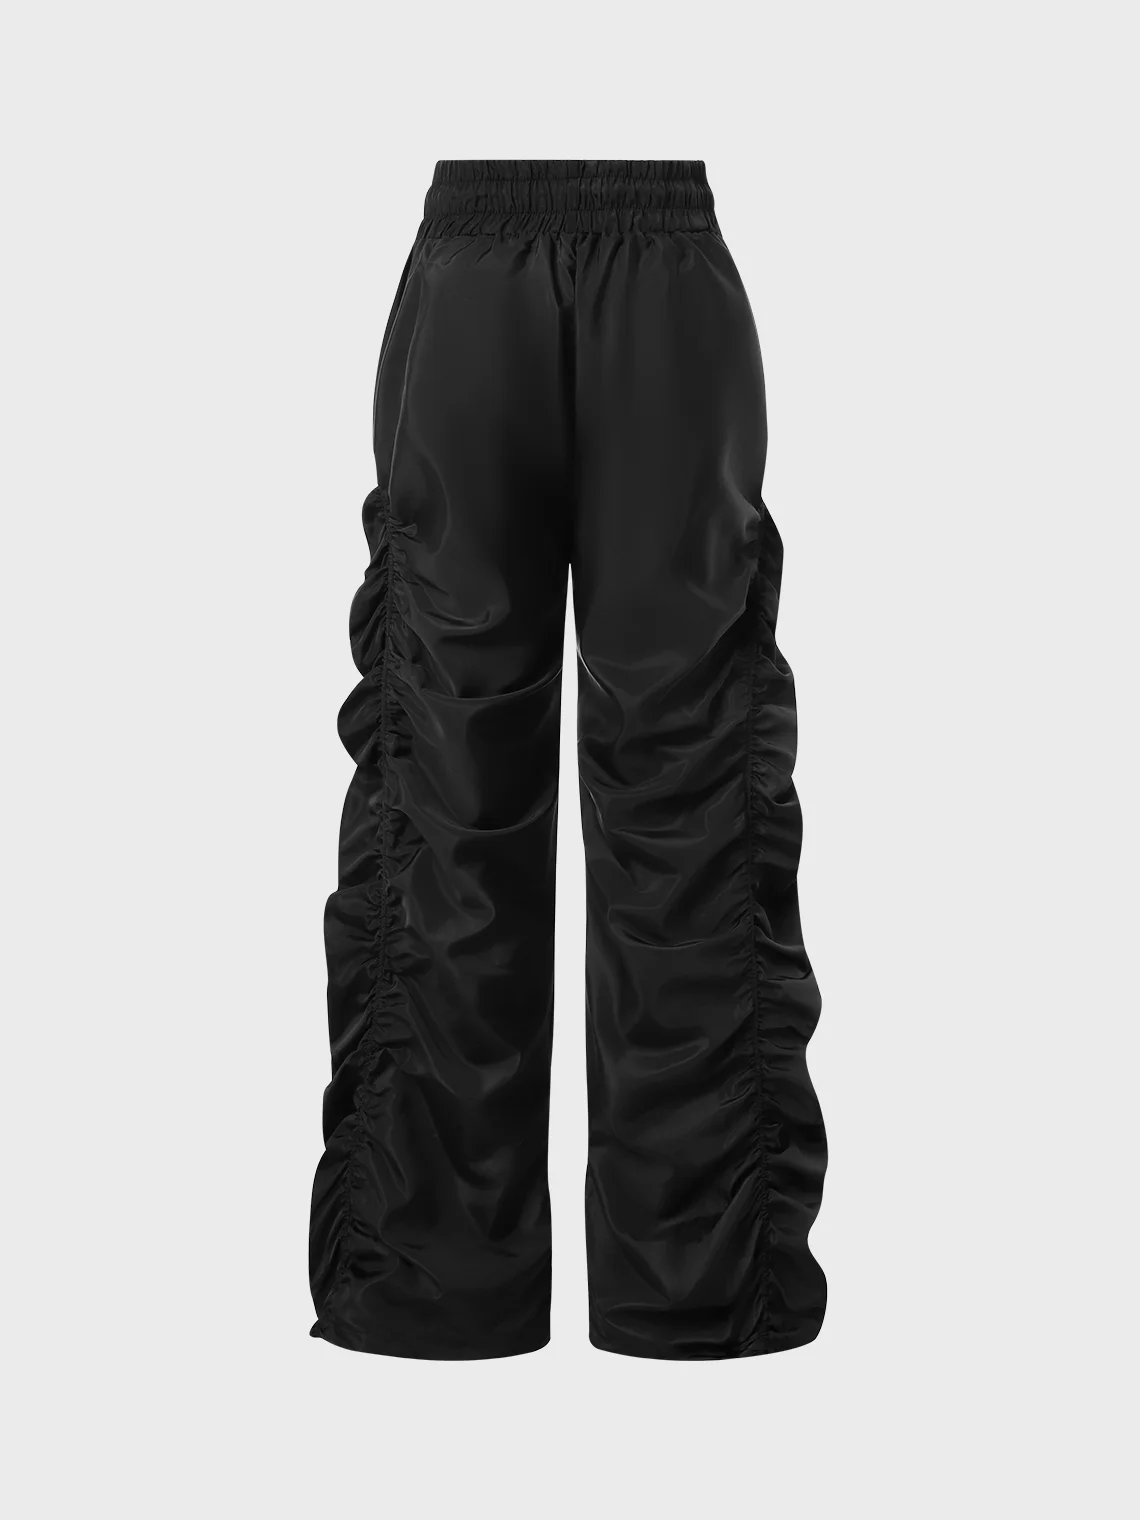 Street Black Wrinkled Bottom Pants | kollyy